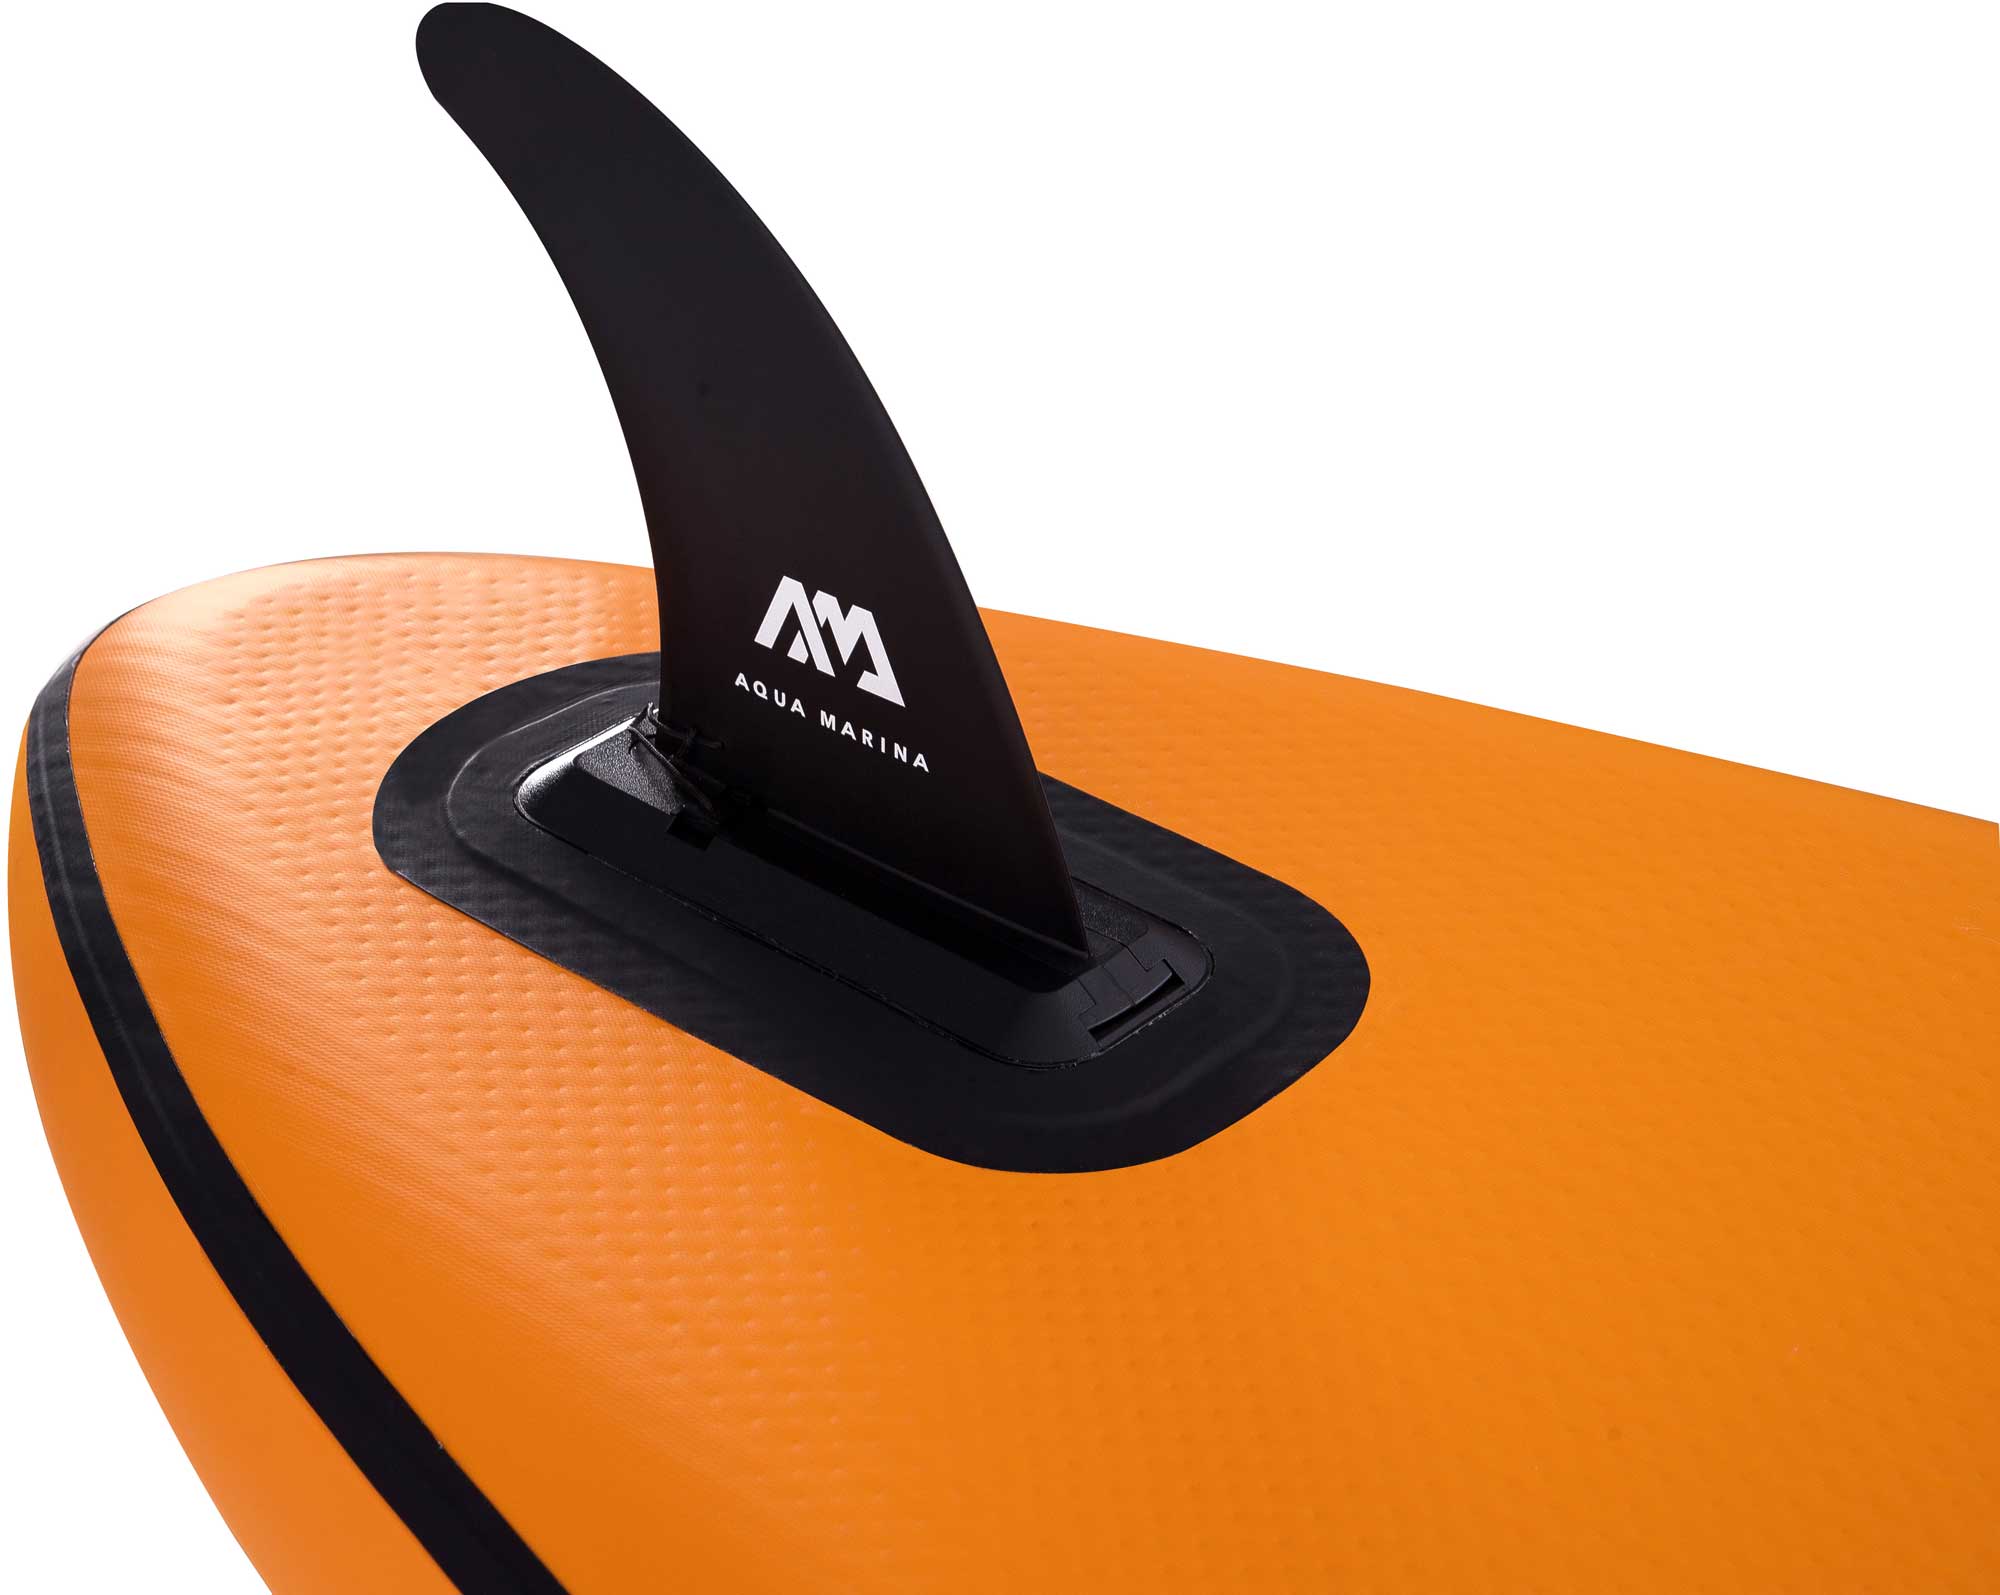 SUP paddleboard